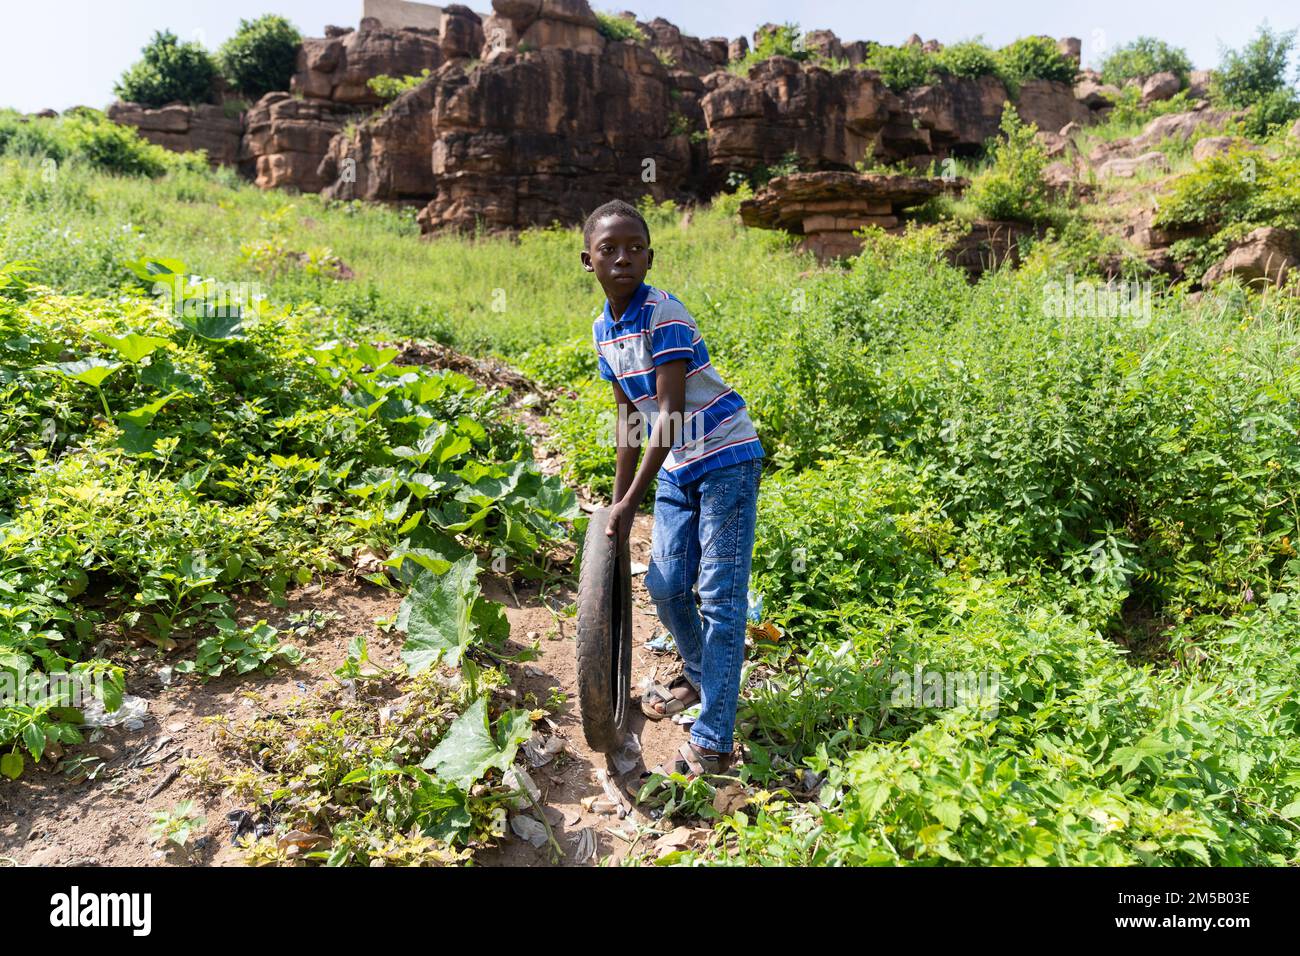 Carino ragazzo africano che gioca da solo con un vecchio pneumatico che lo lascia rotolare giù per la collina su un percorso sterrato Foto Stock